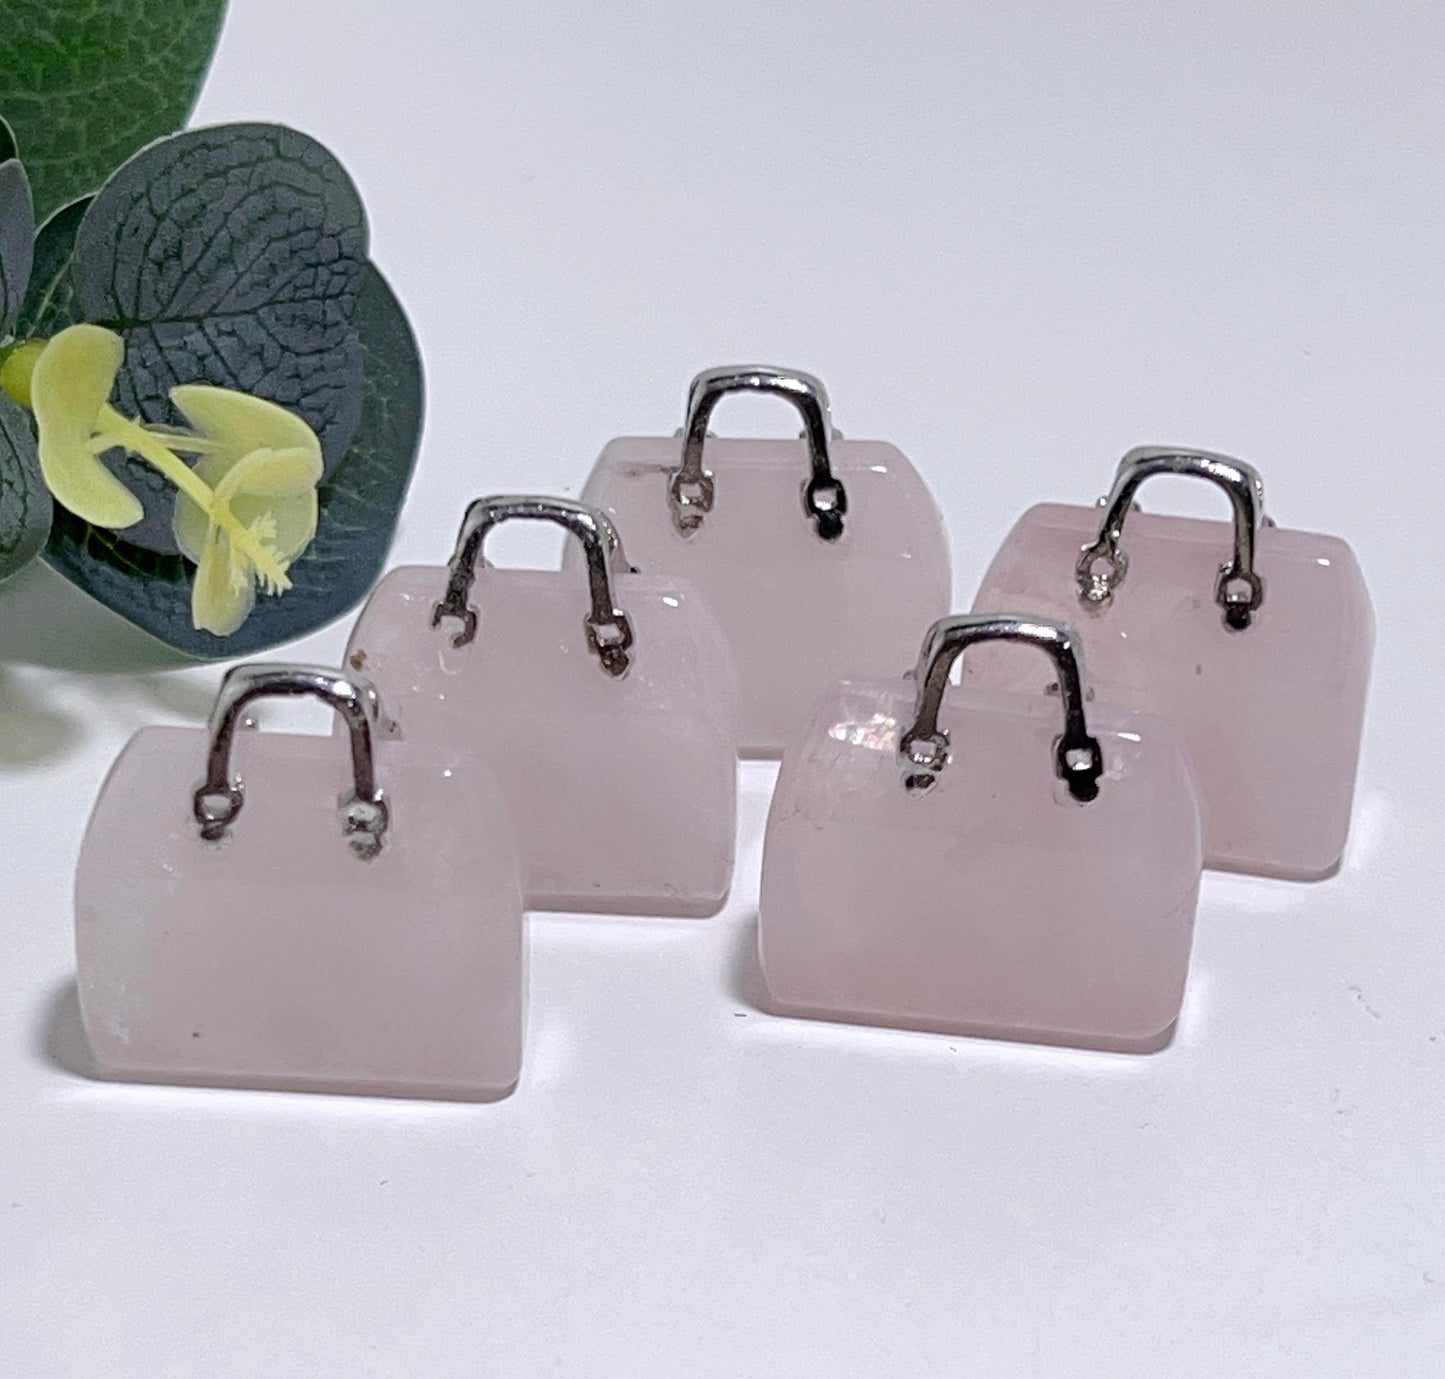 Rose Quartz Handbag with Silver Handles